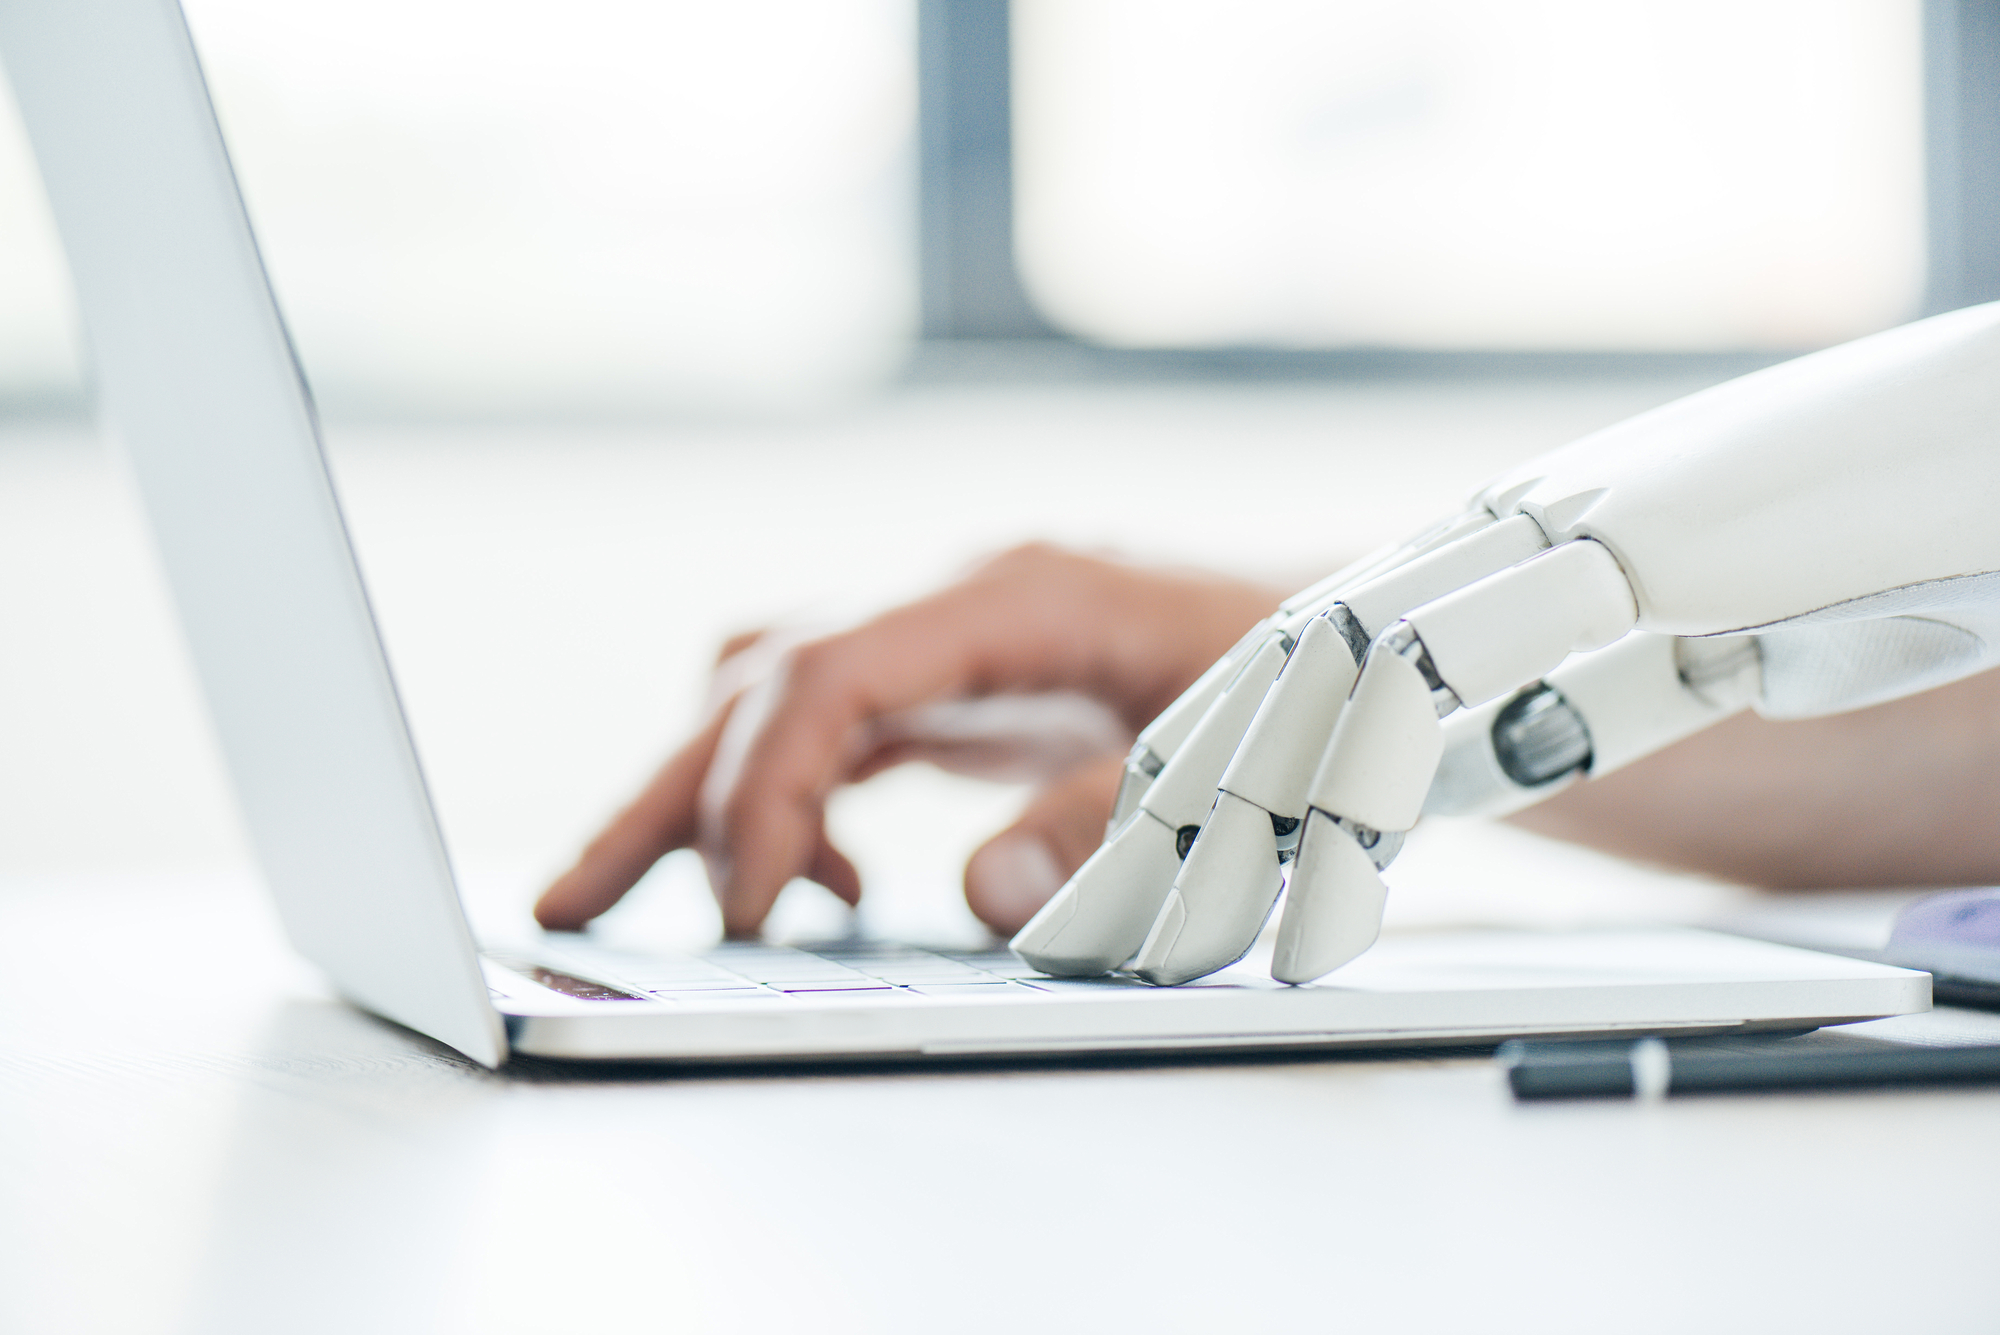 Eine menschliche Hand neben der eines Roboters auf einem Notebook